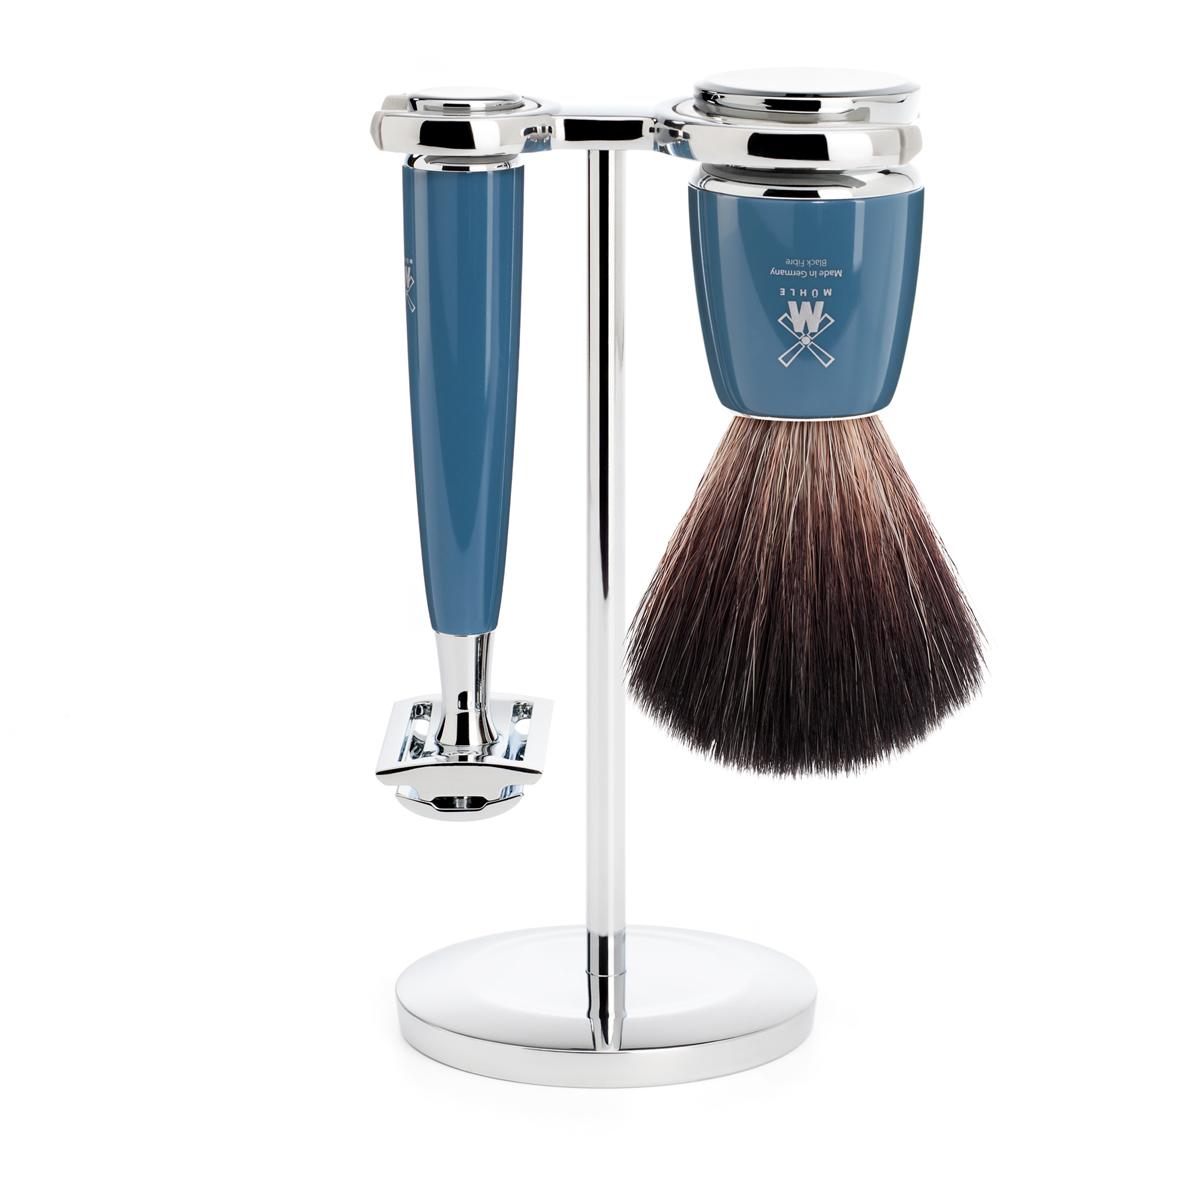 Mühle rytmo azul gasolina 3 unid. conjunto de barbear de fibra preta / aparelho de barbear